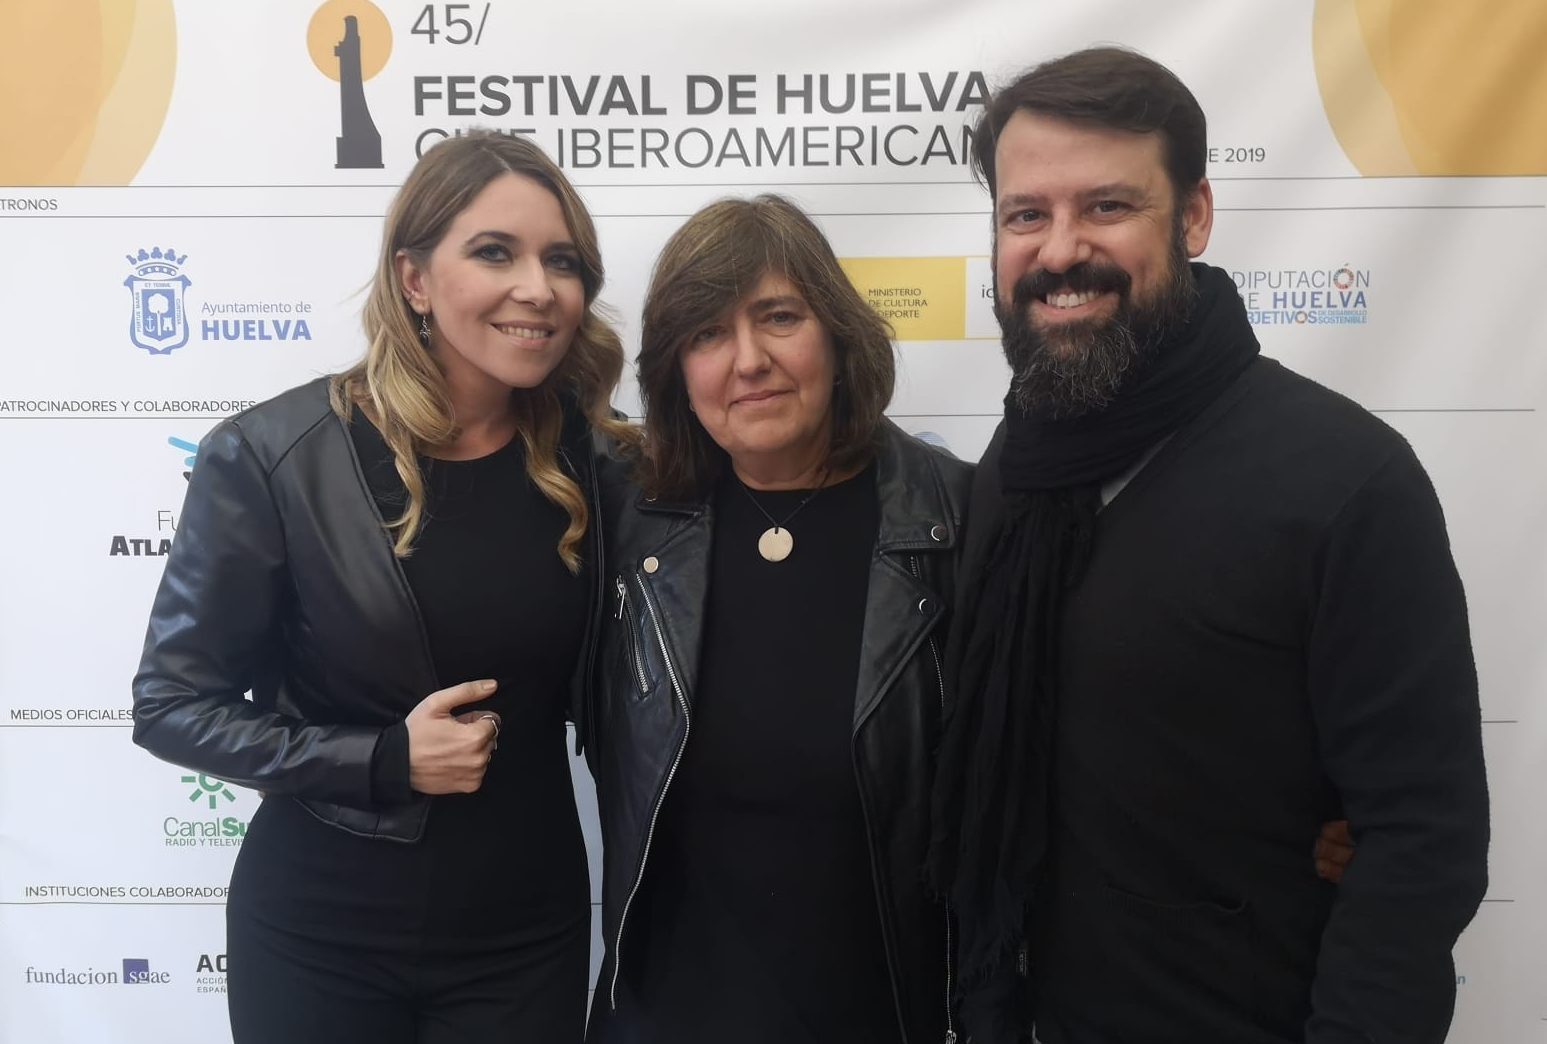 Menese en el Festival Iberoamericano de Huelva